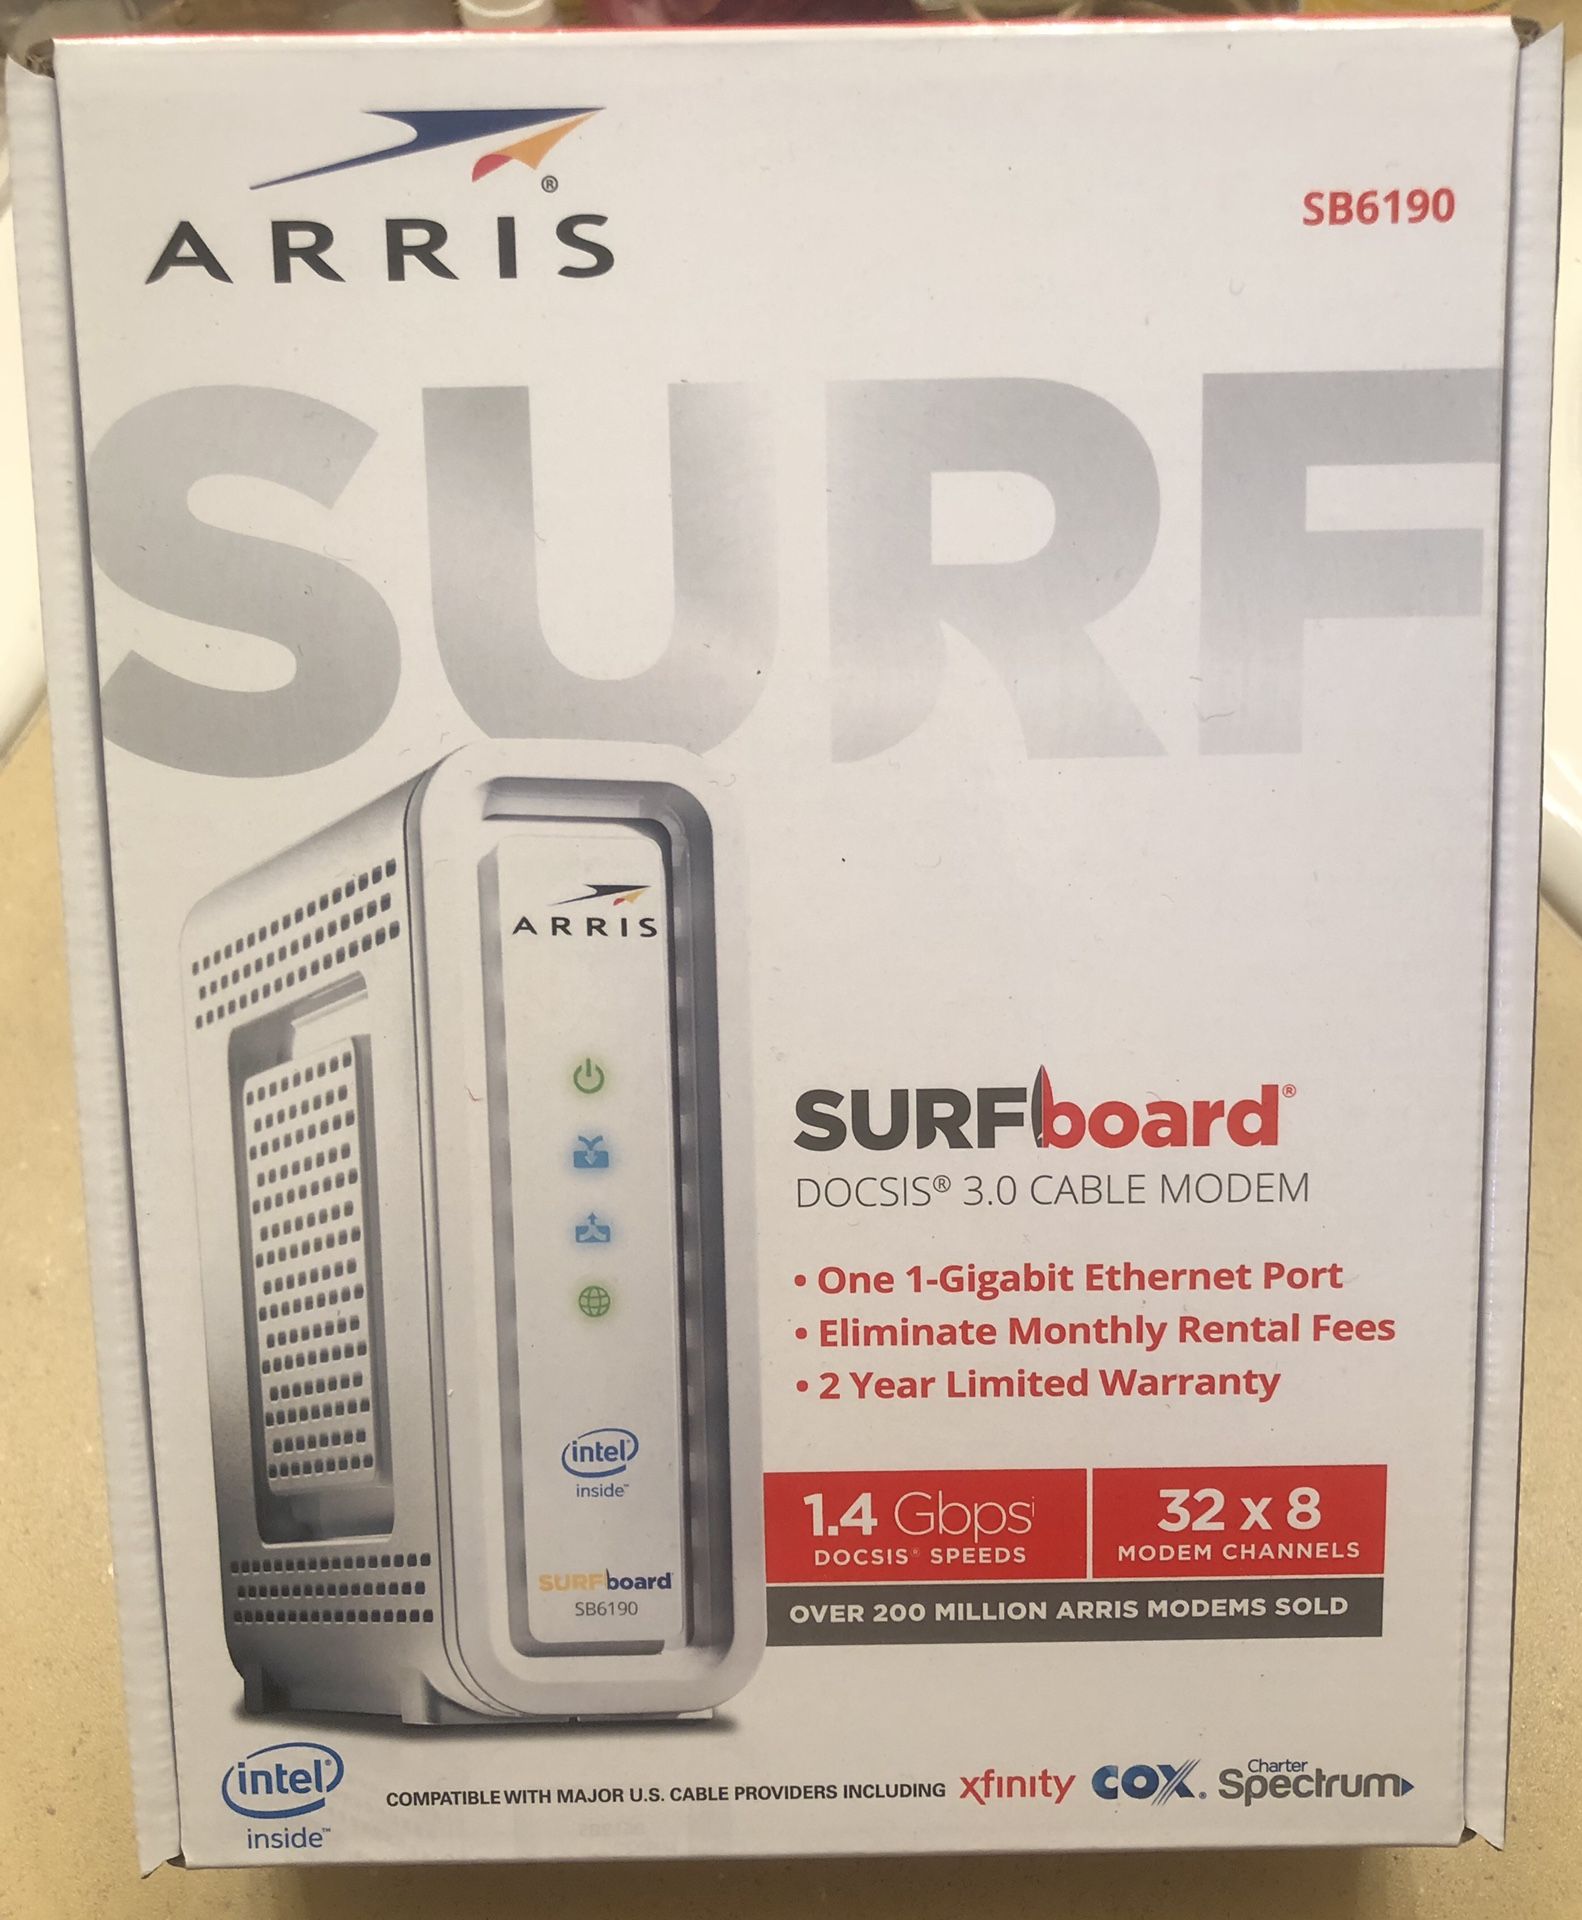 ARRIS - SURFboard 32 x 8 DOCSIS 3.0 Cable Modem - White - NIB